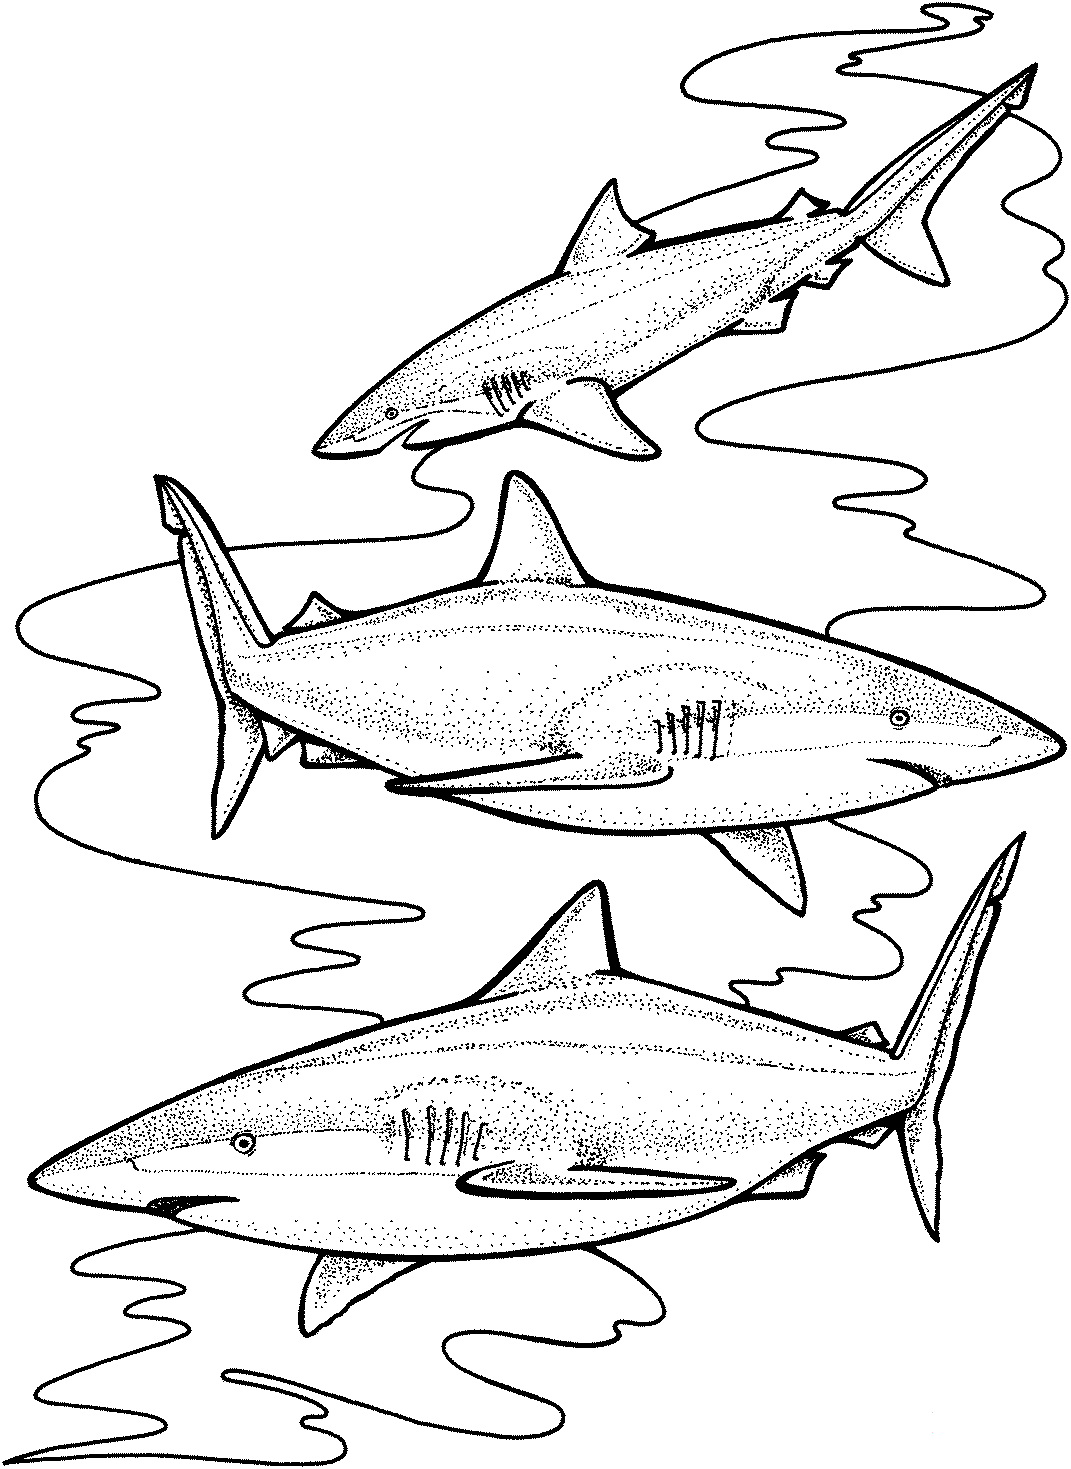 Es probable que tres tiburones tigre se especialicen en ciertas presas altamente disponibles de Shark